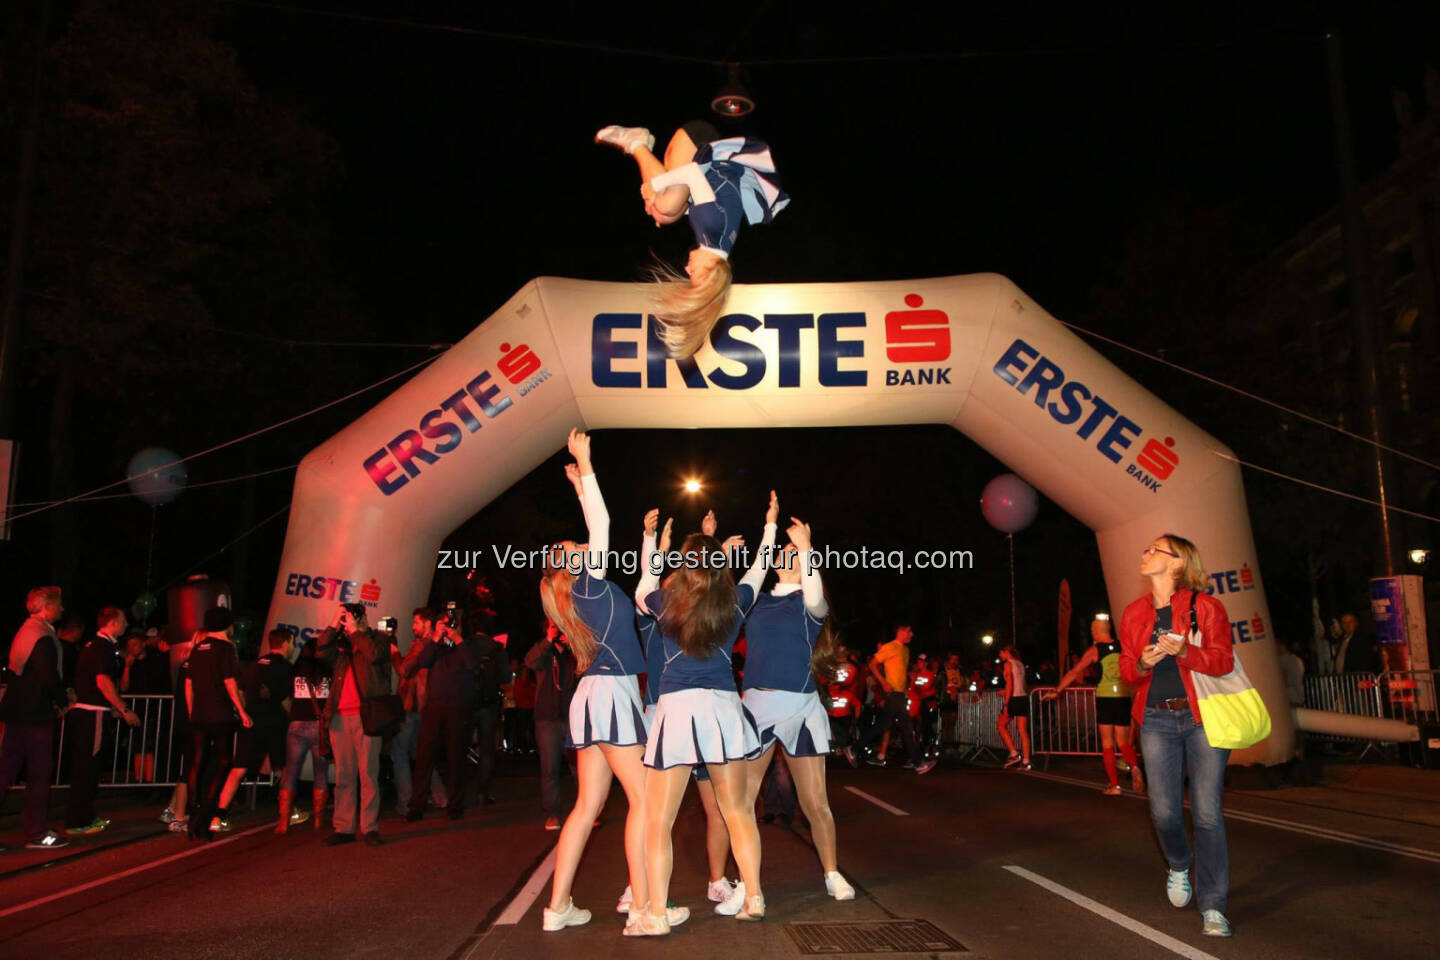 erste bank vienna night run 2014, cheerleader